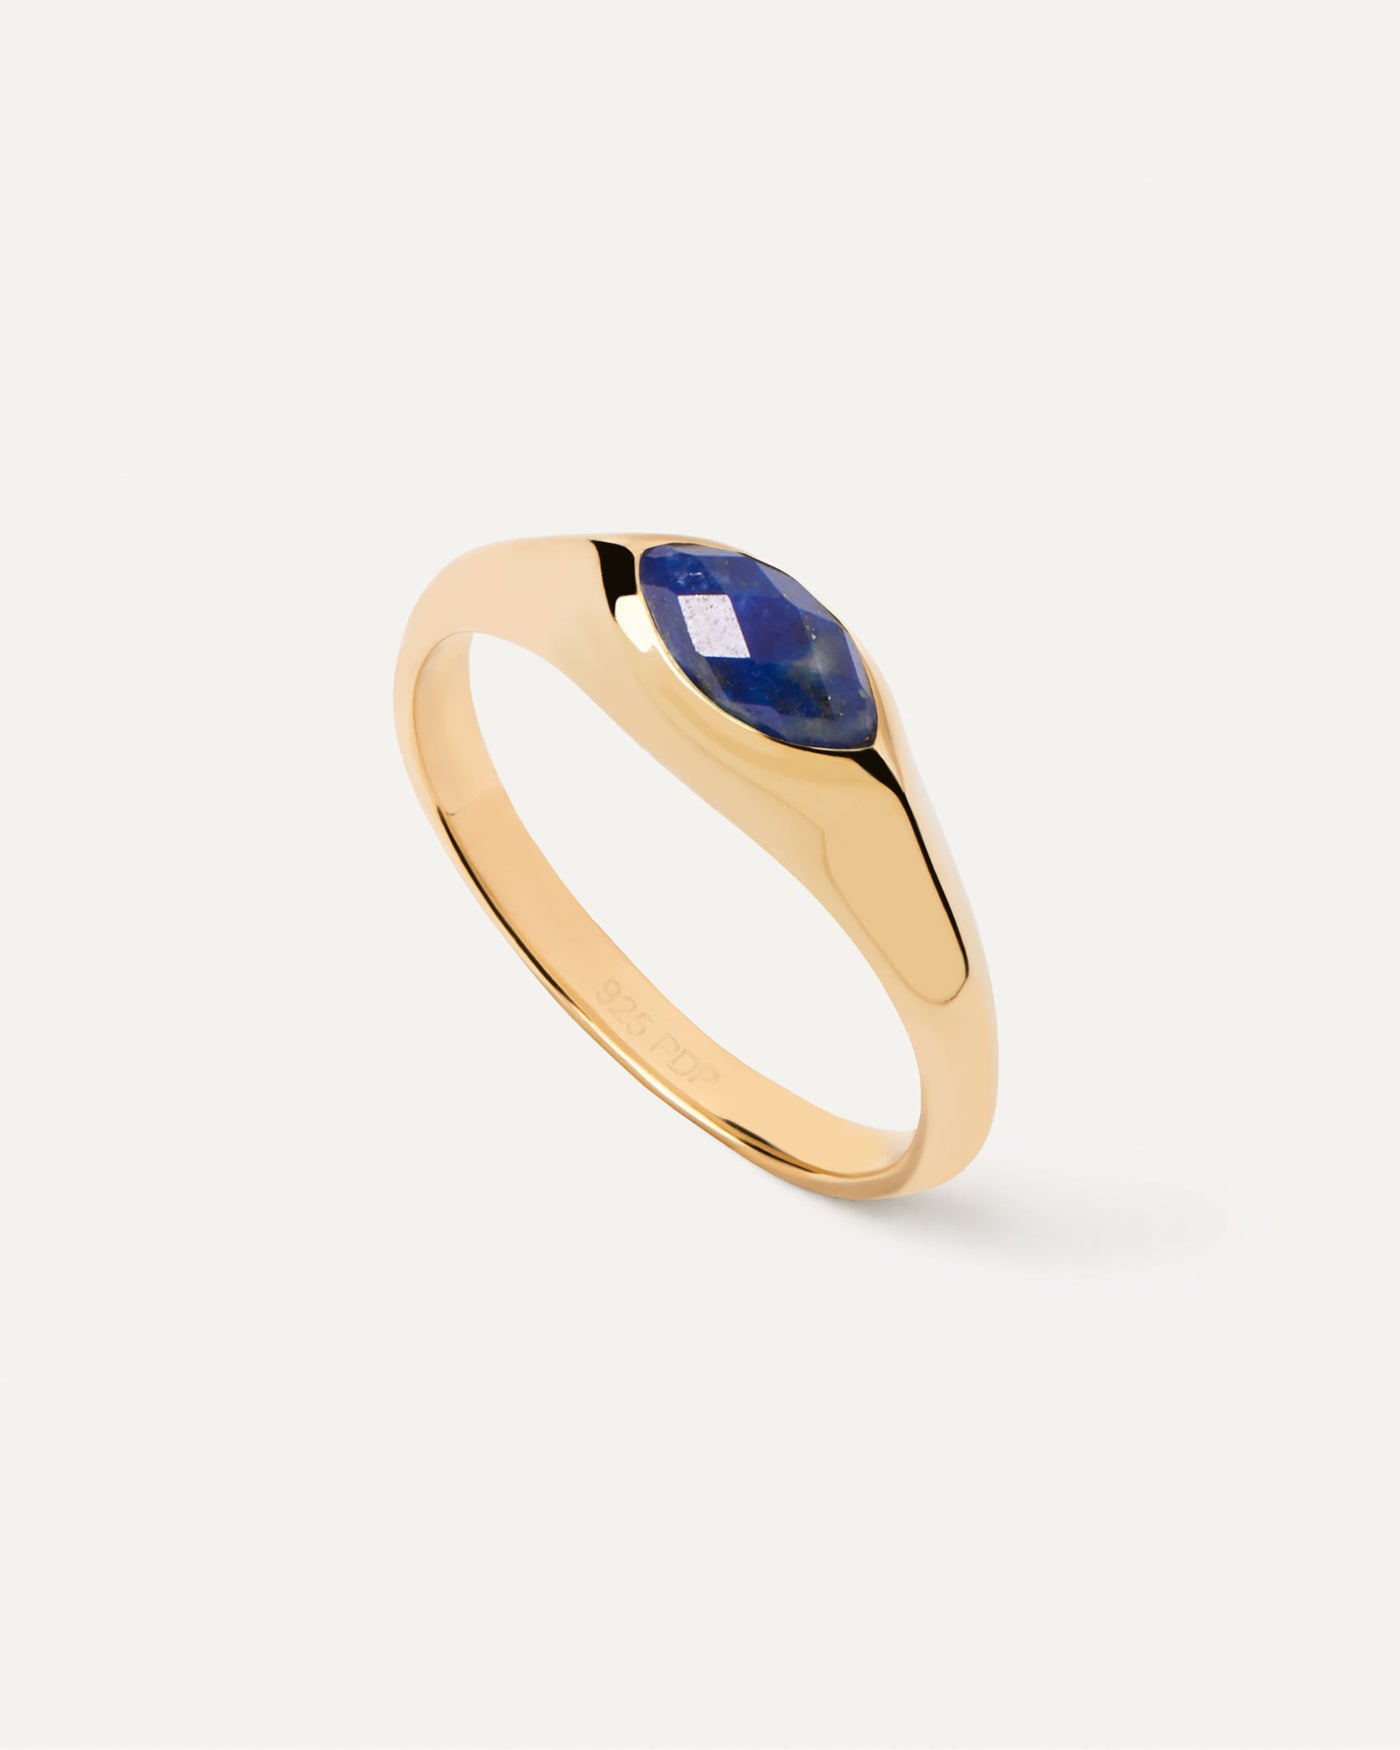 Bague Chevalière Lapis-Lazuli Nomad. Bague chevalière plaquée or ornée d'une pierre bleue taillée en marquise. Découvrez les dernières nouveautés de chez PDPAOLA. Commandez et recevez votre bijou en toute sérénité.